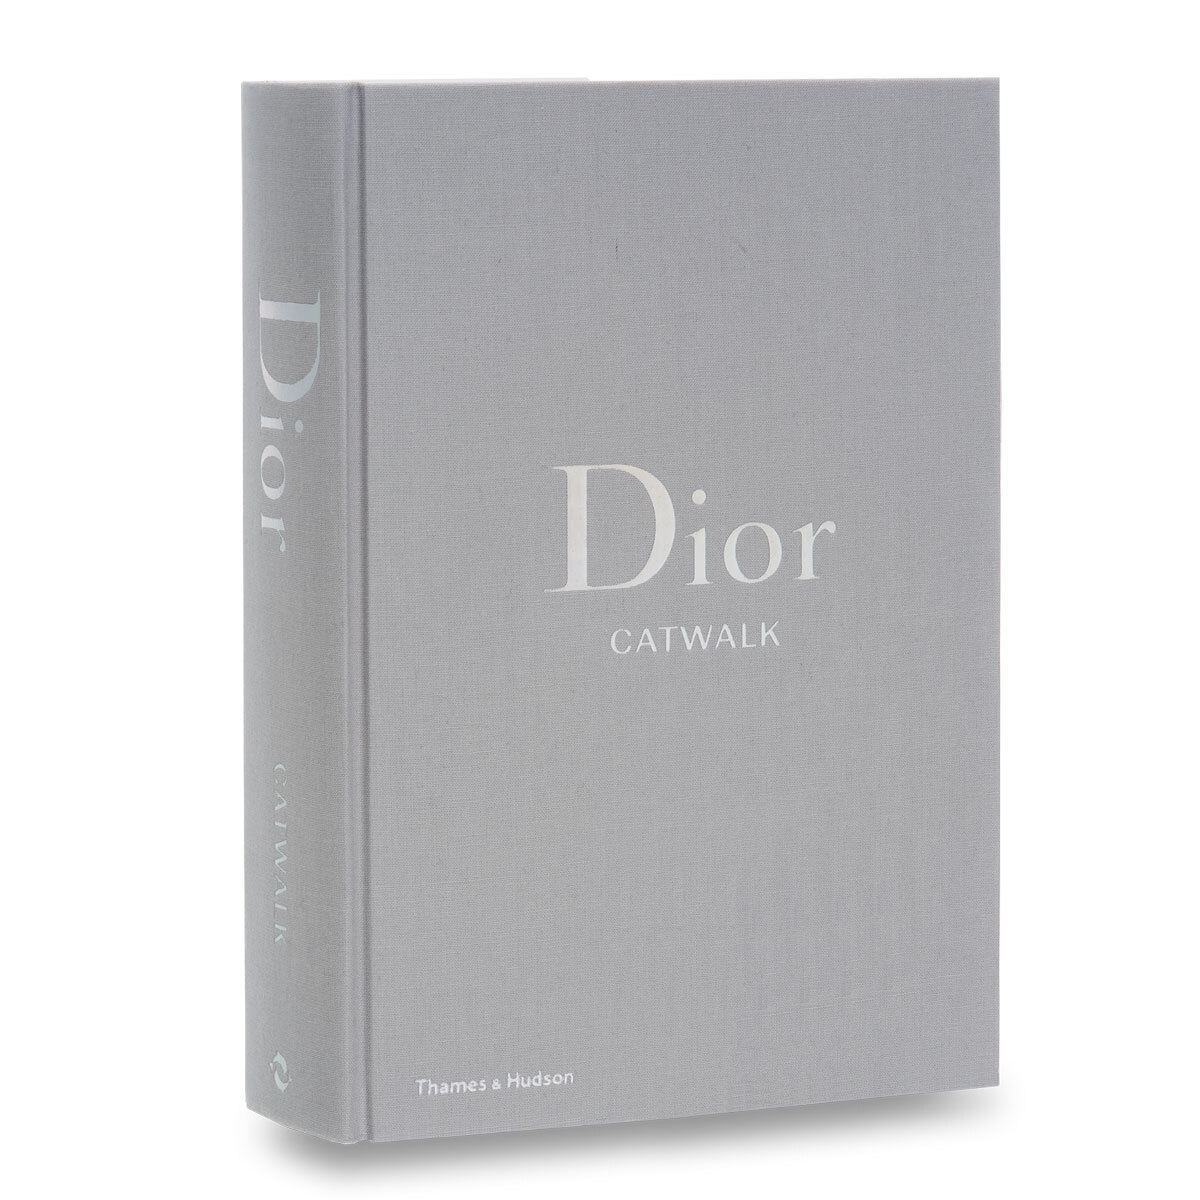 Book Dior Catwalk